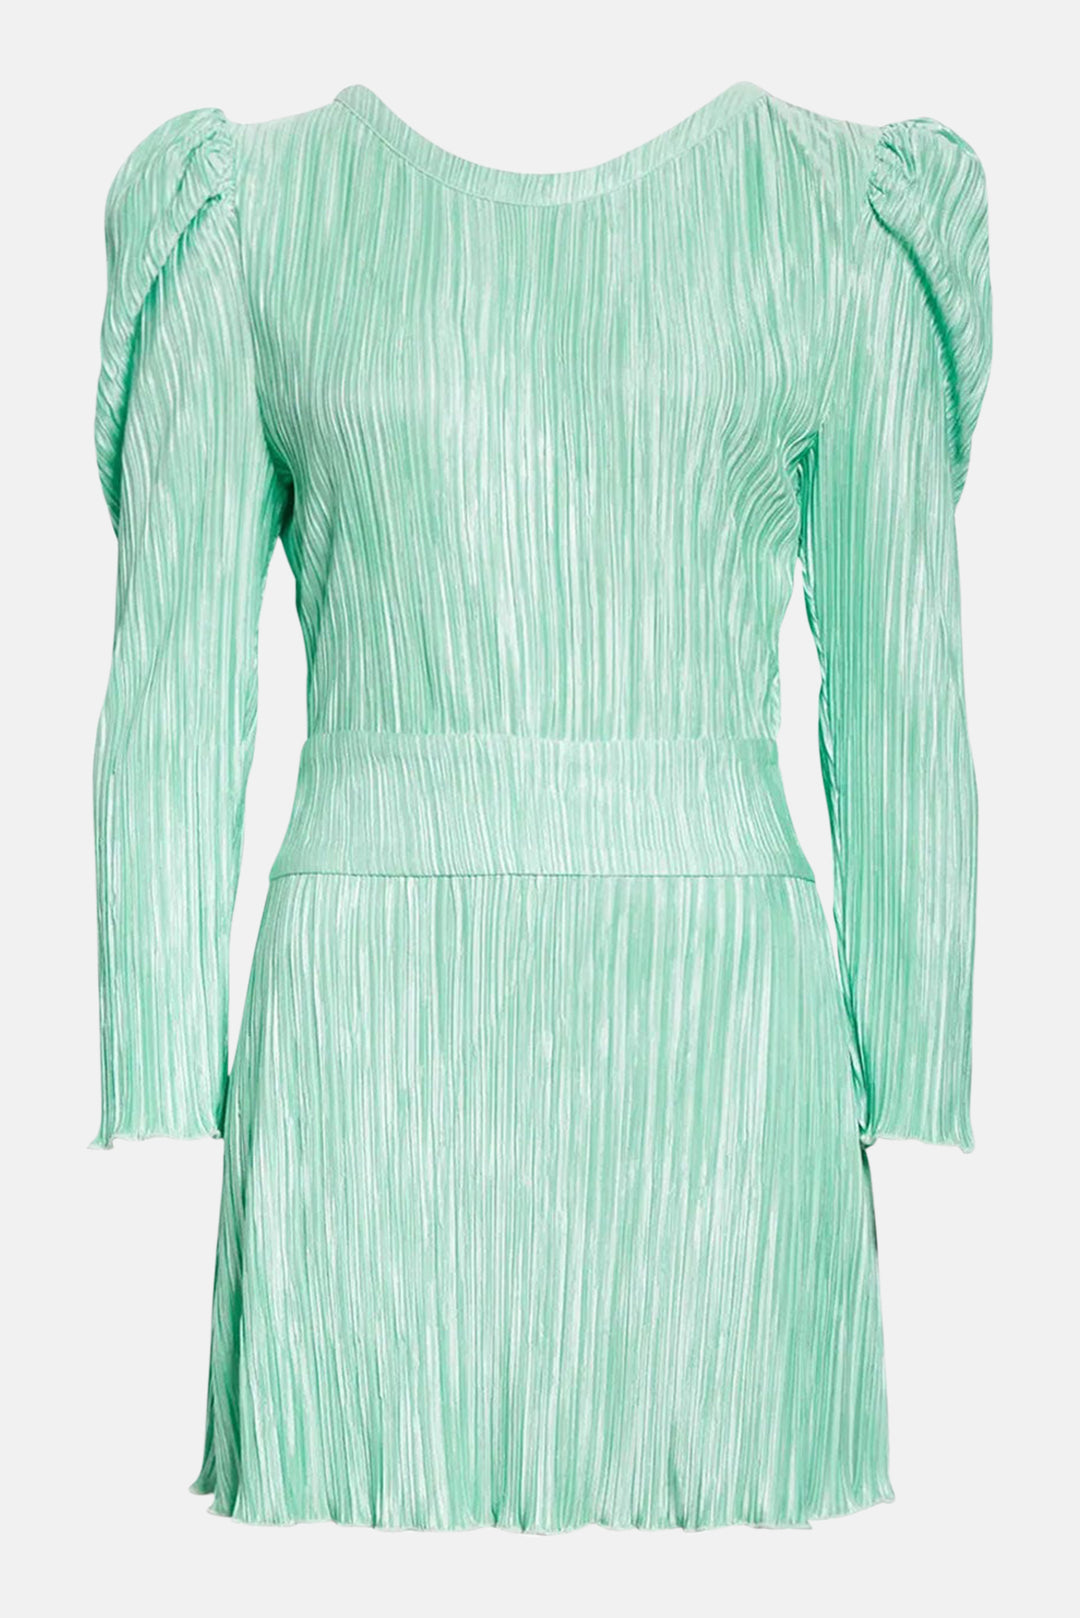 Carleen Dress Light Emerald - blueandcream